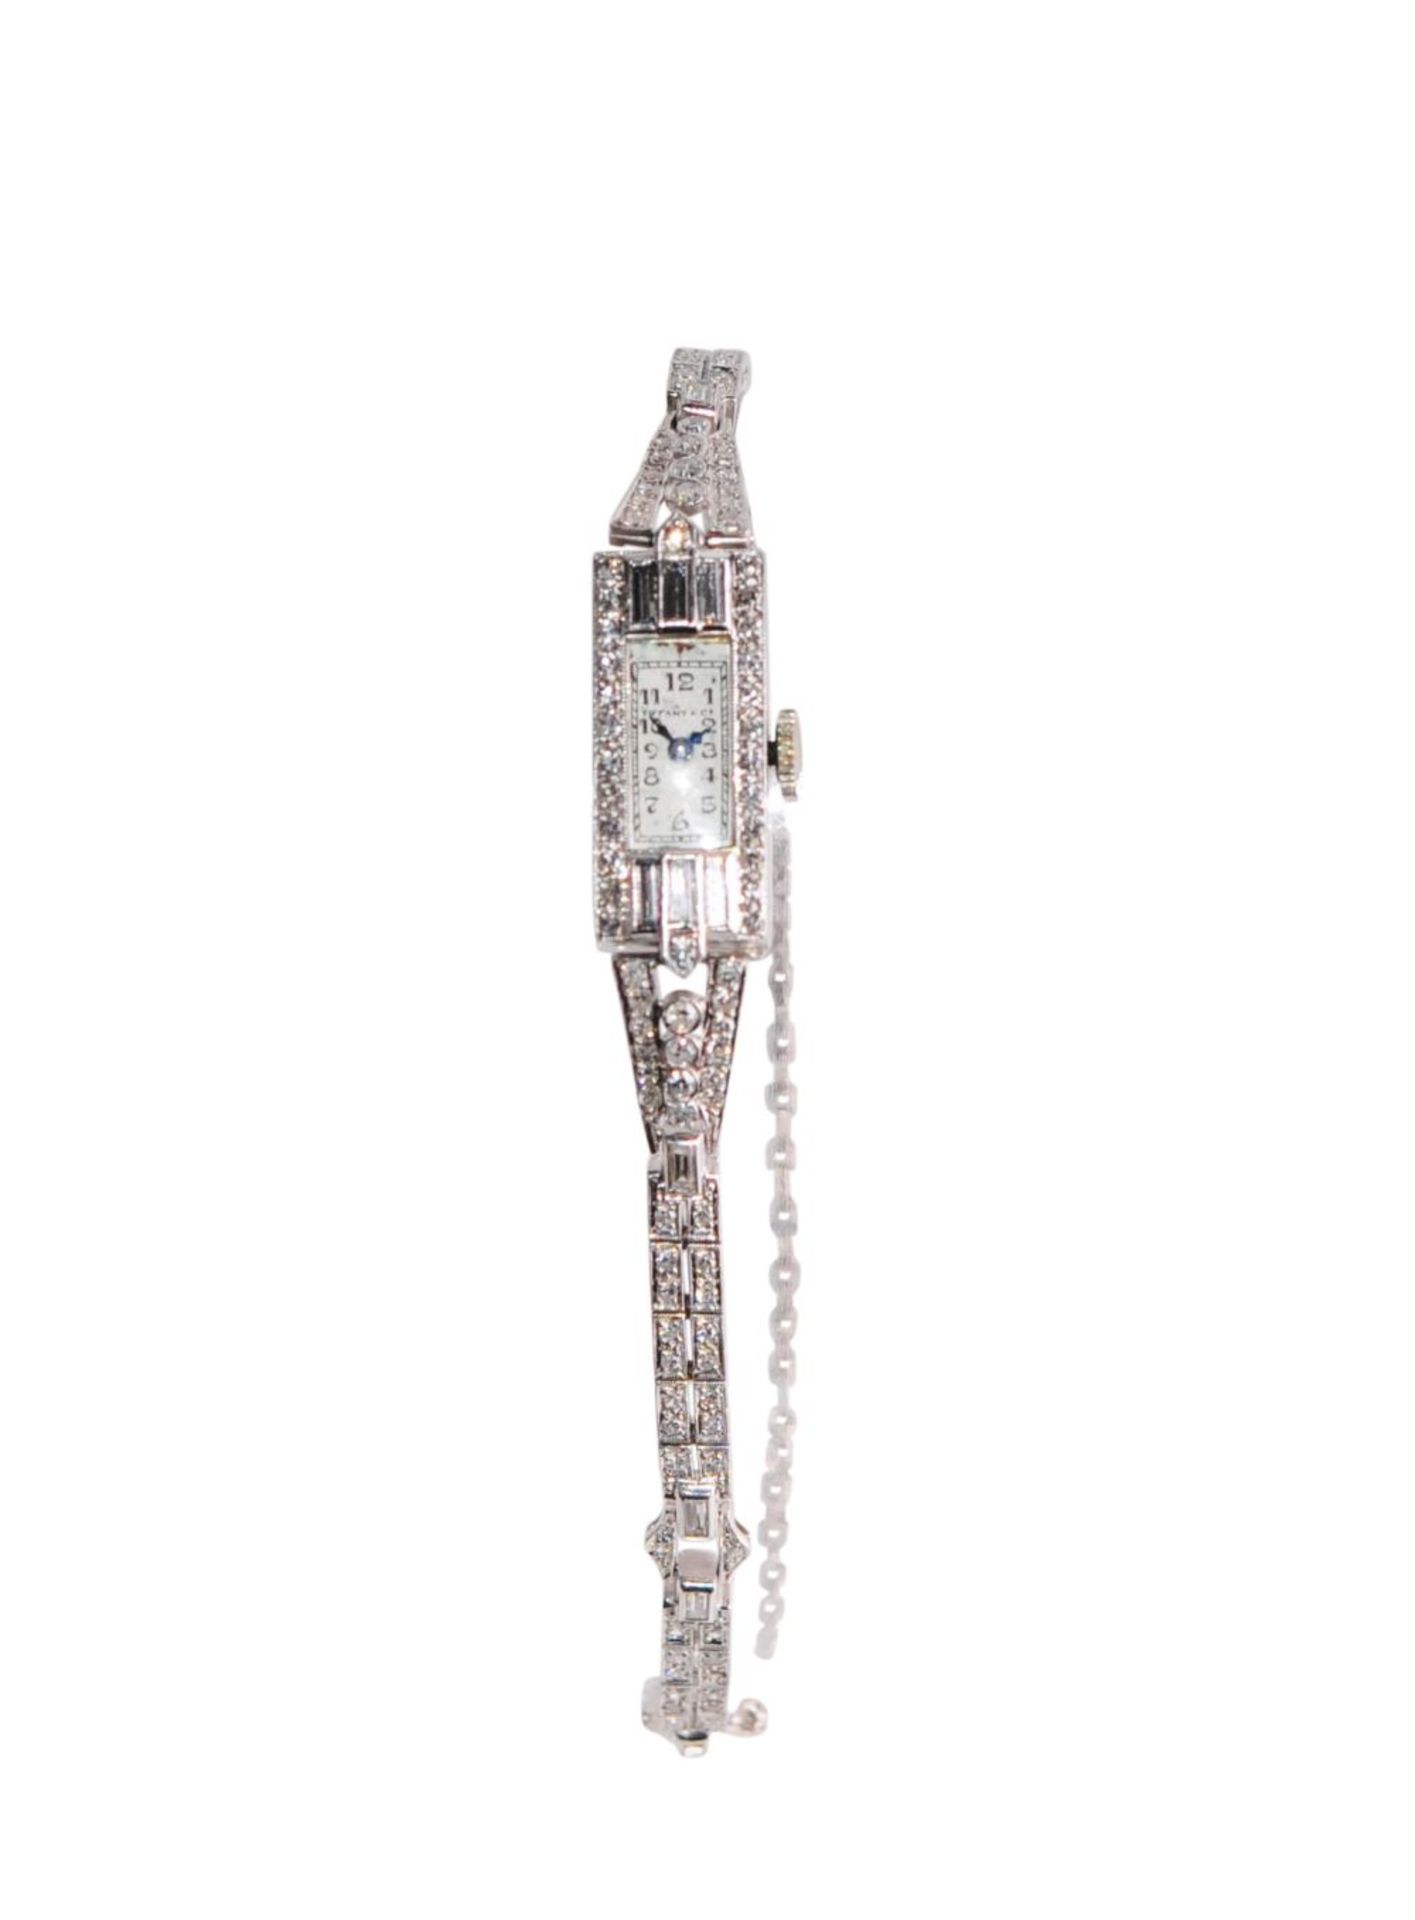 Tiffany Platin Art DecoVery nice jewelry watch Tiffany New York 900 platinum watch with brilliant